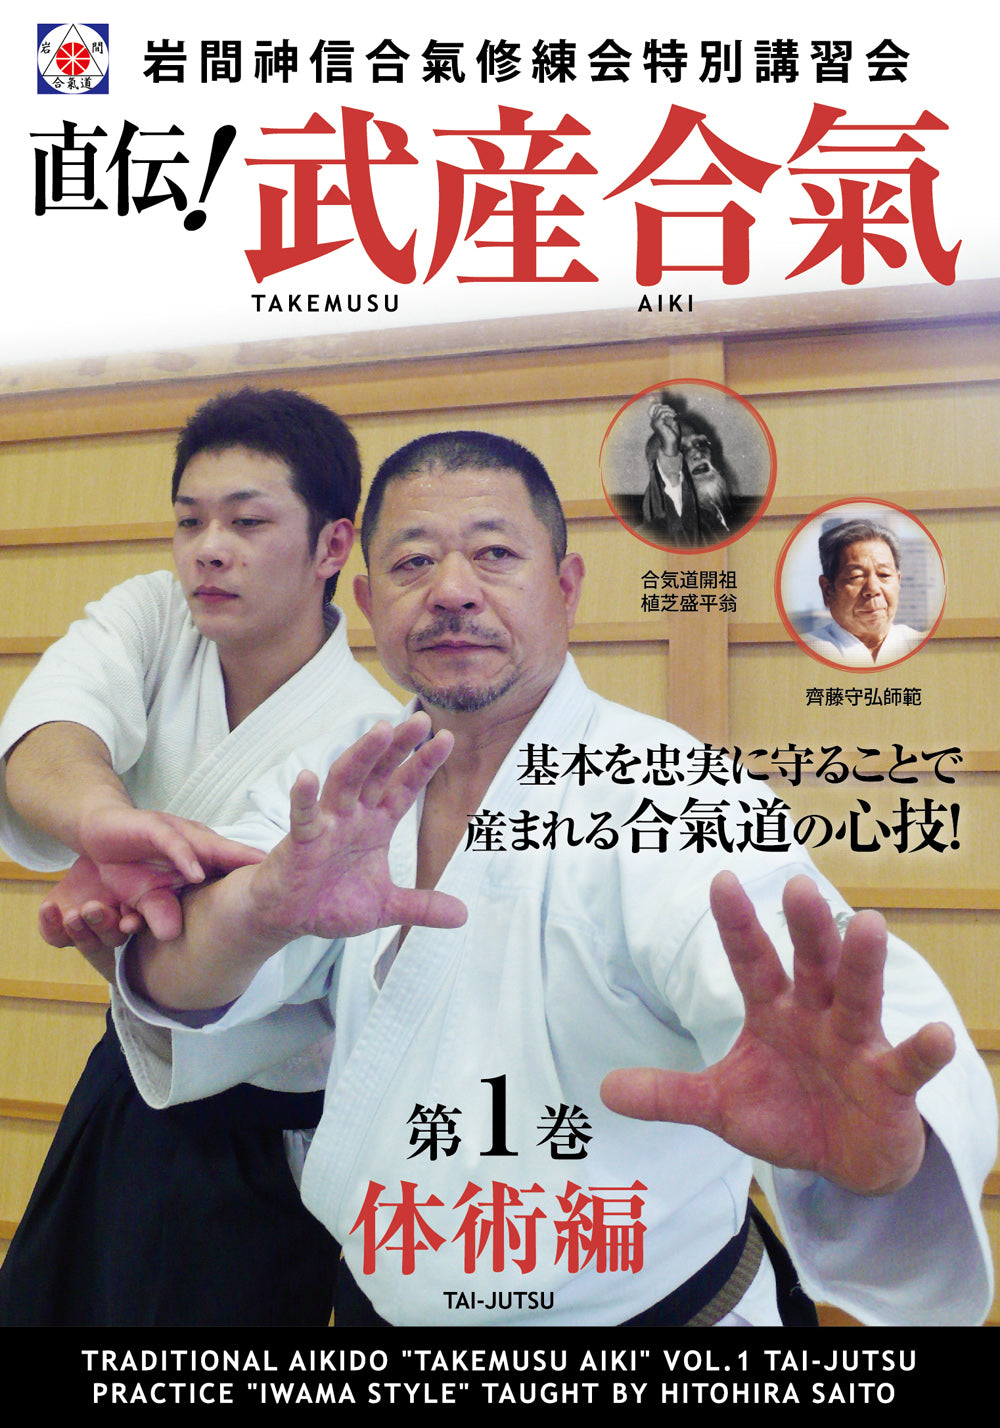 Takemusu Aiki DVD 1 con Hitohiro Saito